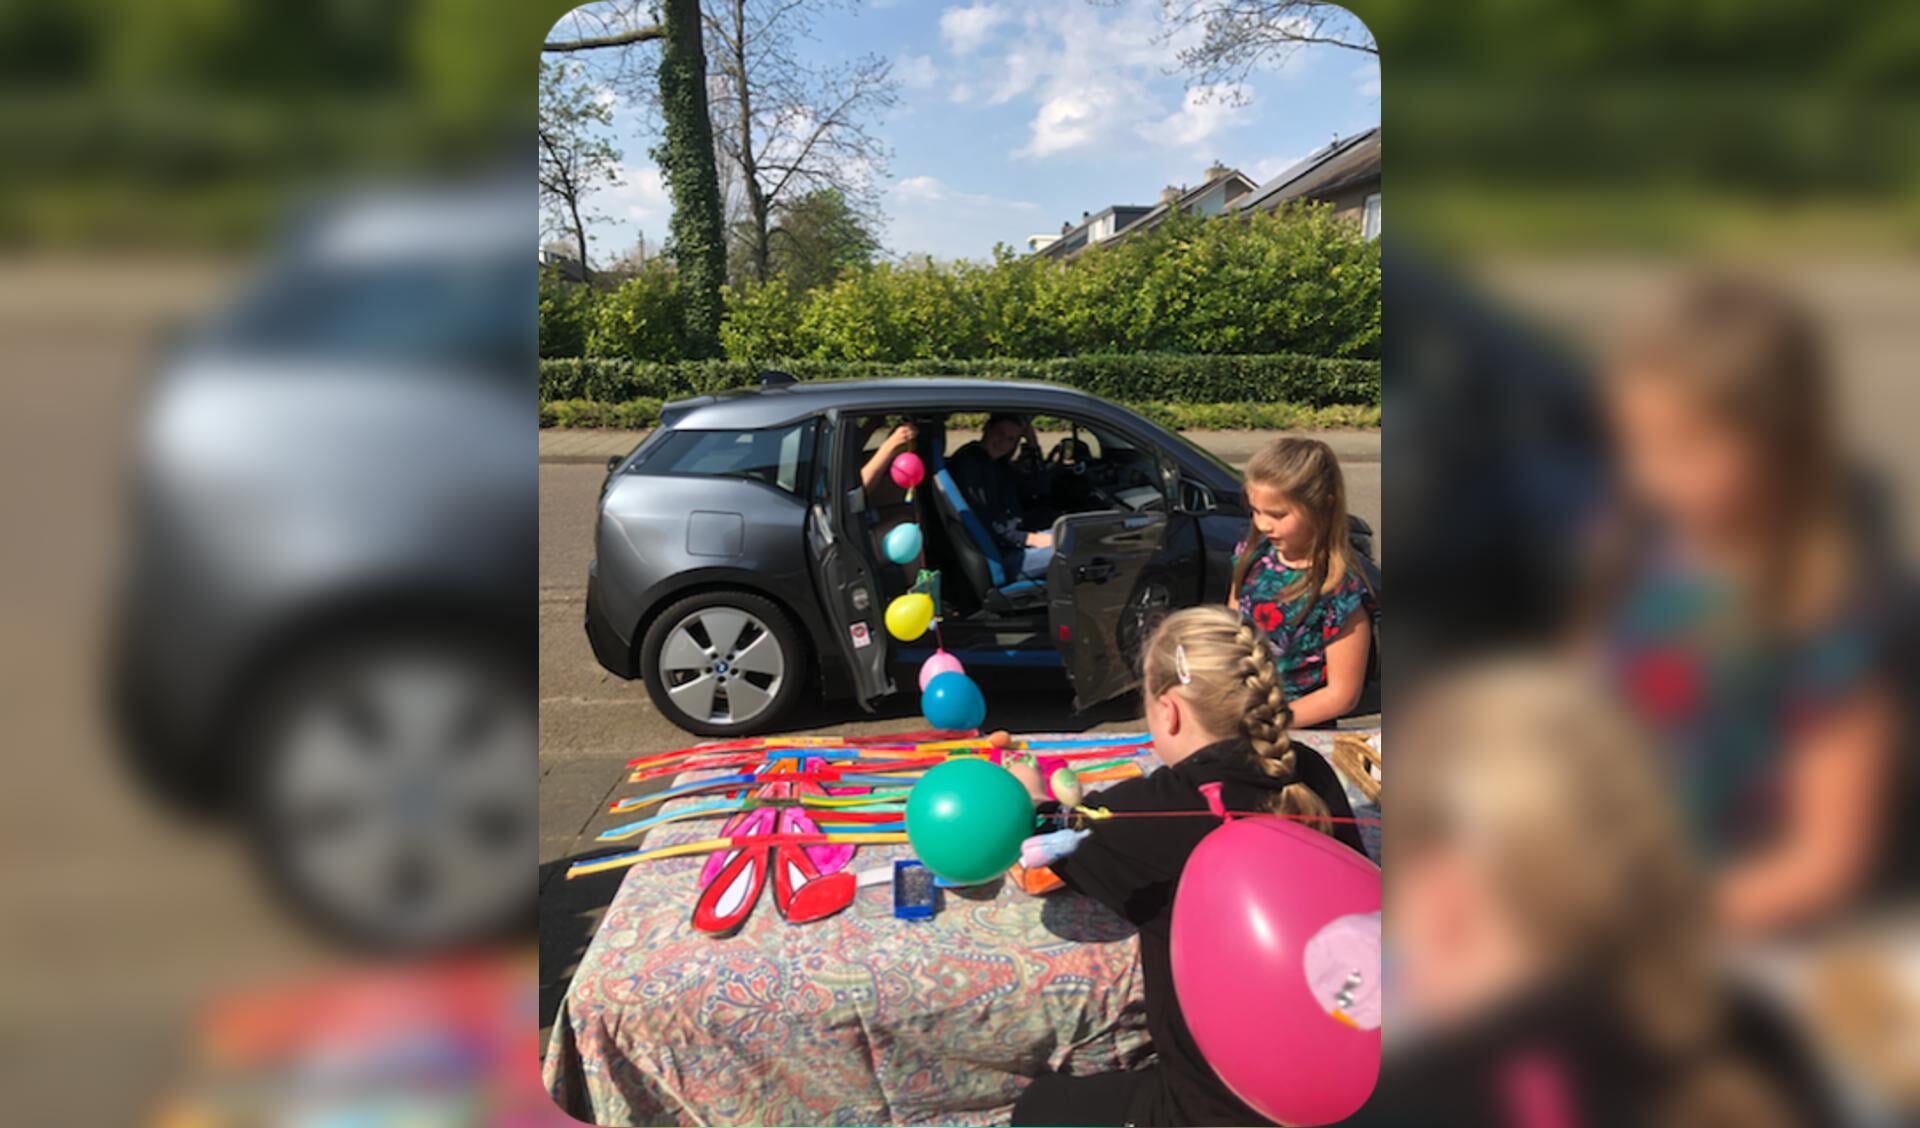 Ballonnen vanuit de auto naar de jarige! 